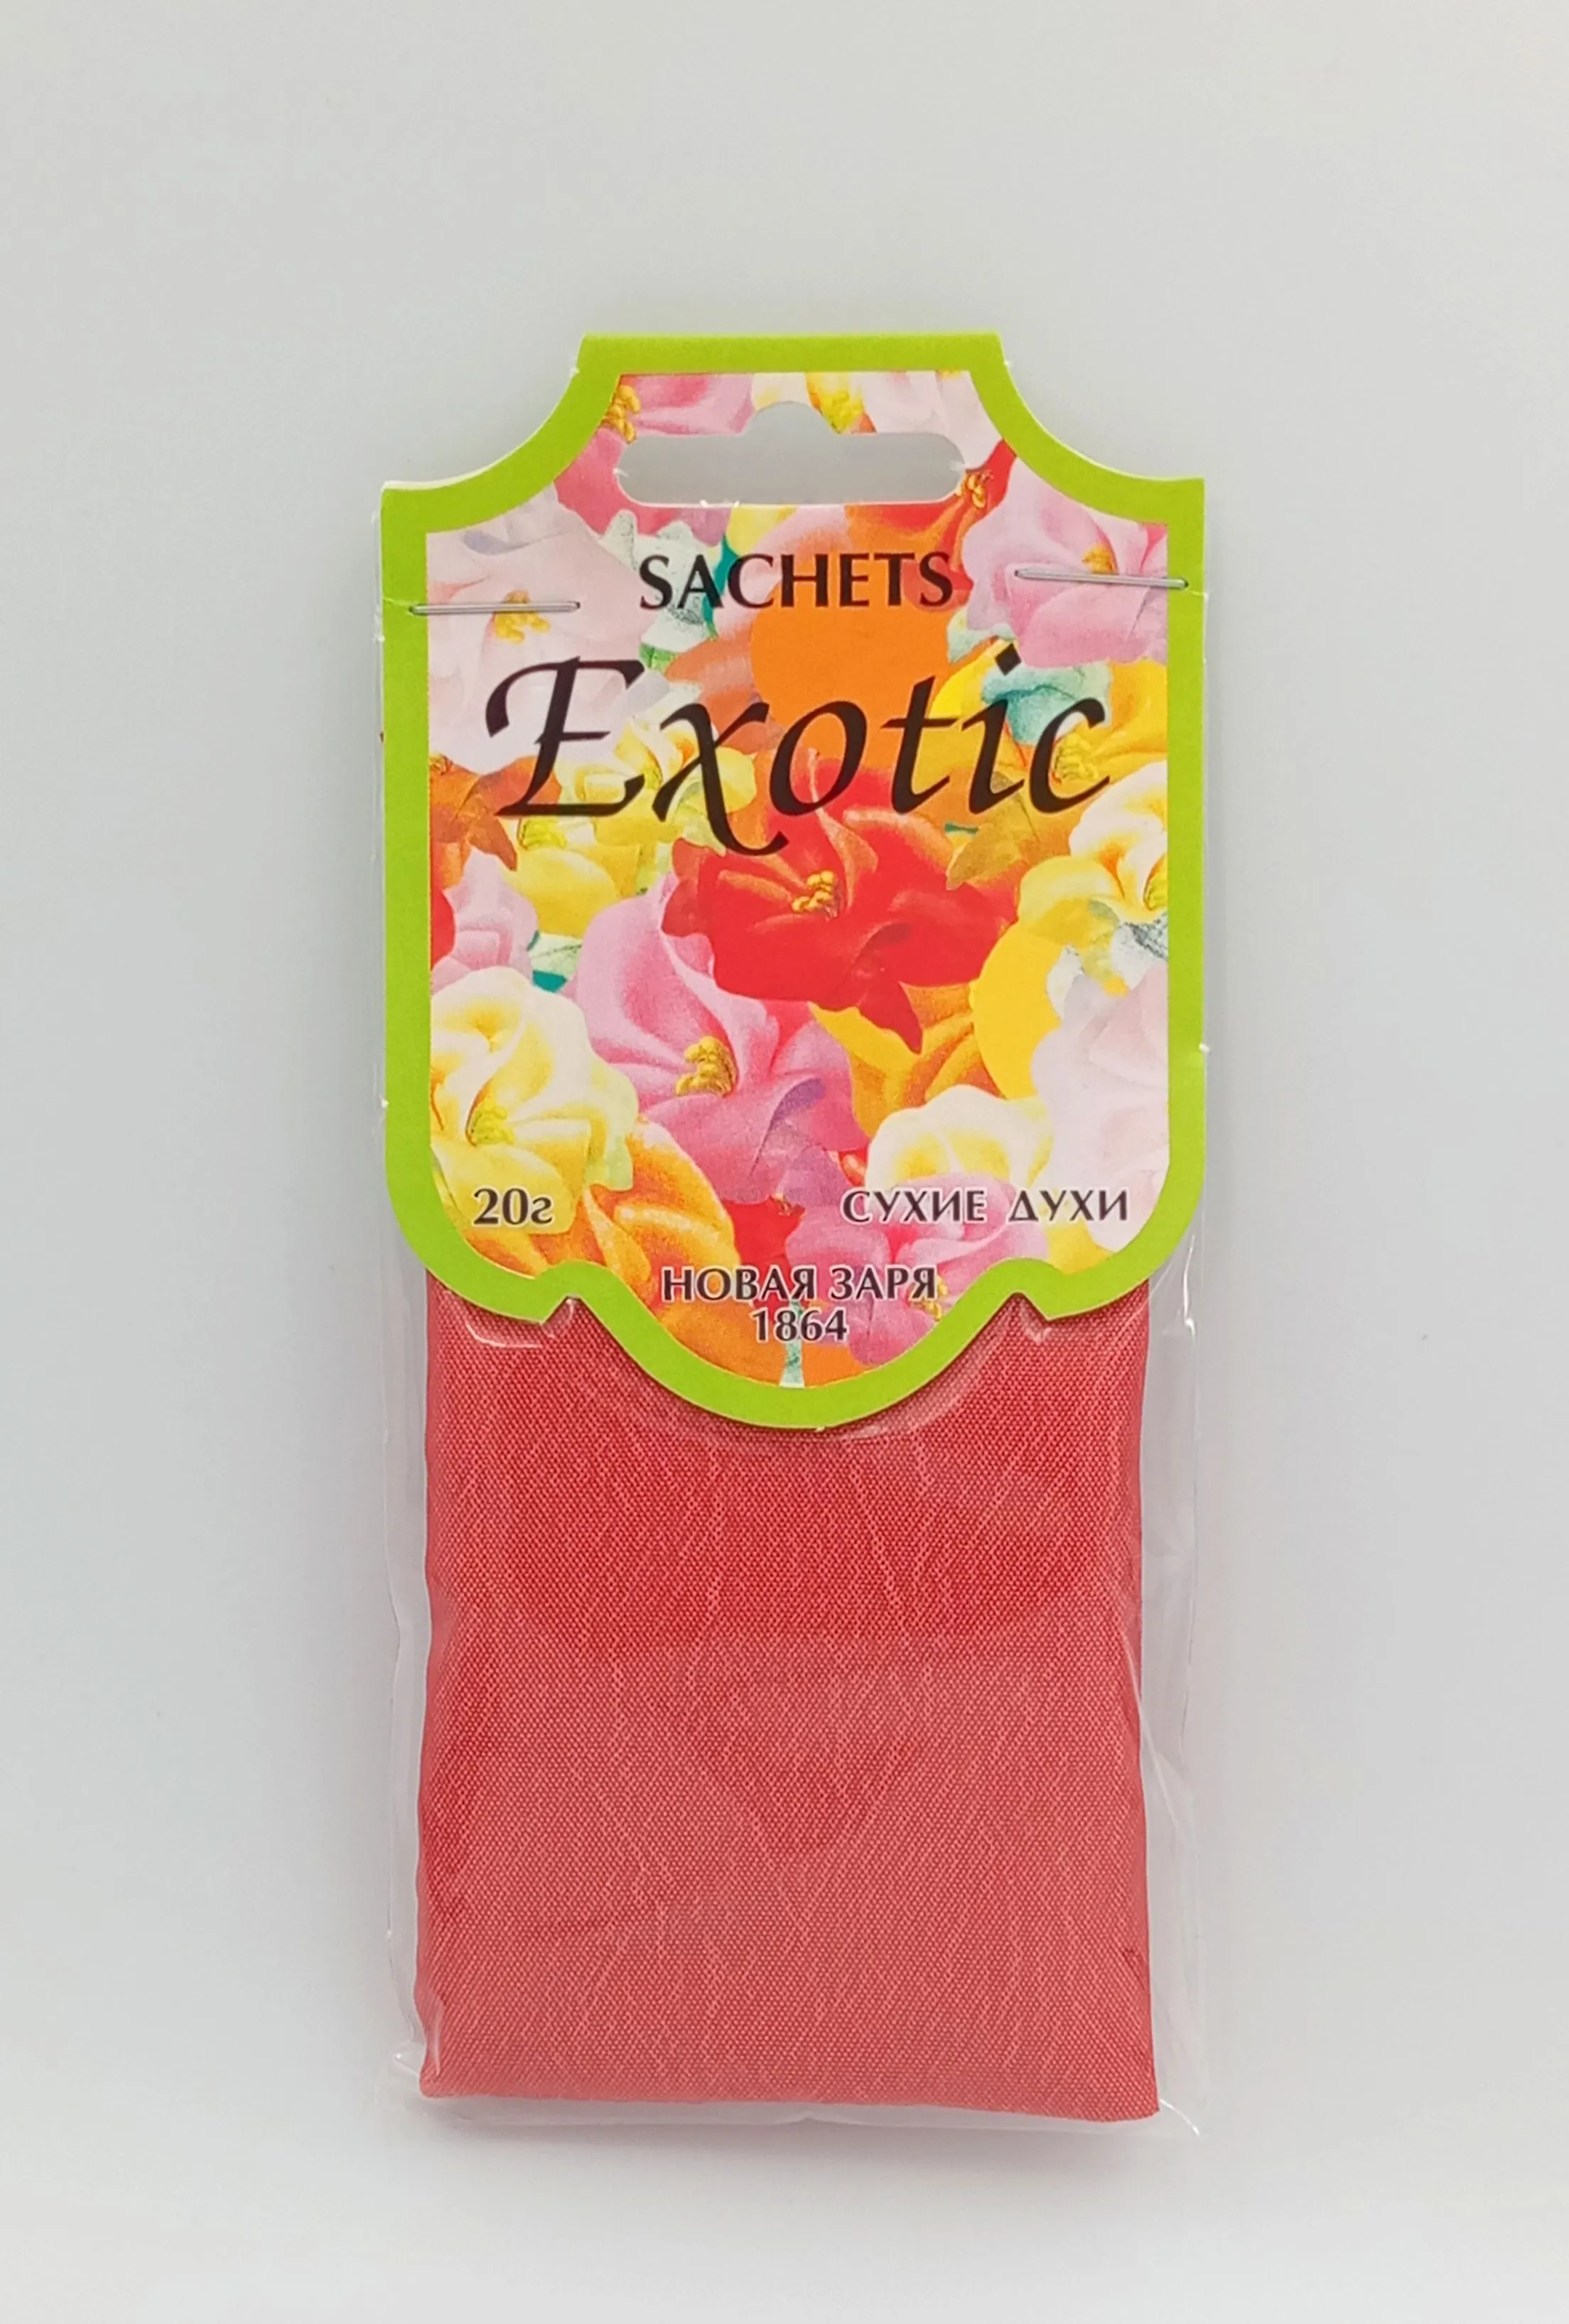 Новая Заря Sachets Exotic Сухие духи-саше для шкафов и помещений Экзотик 20 гр